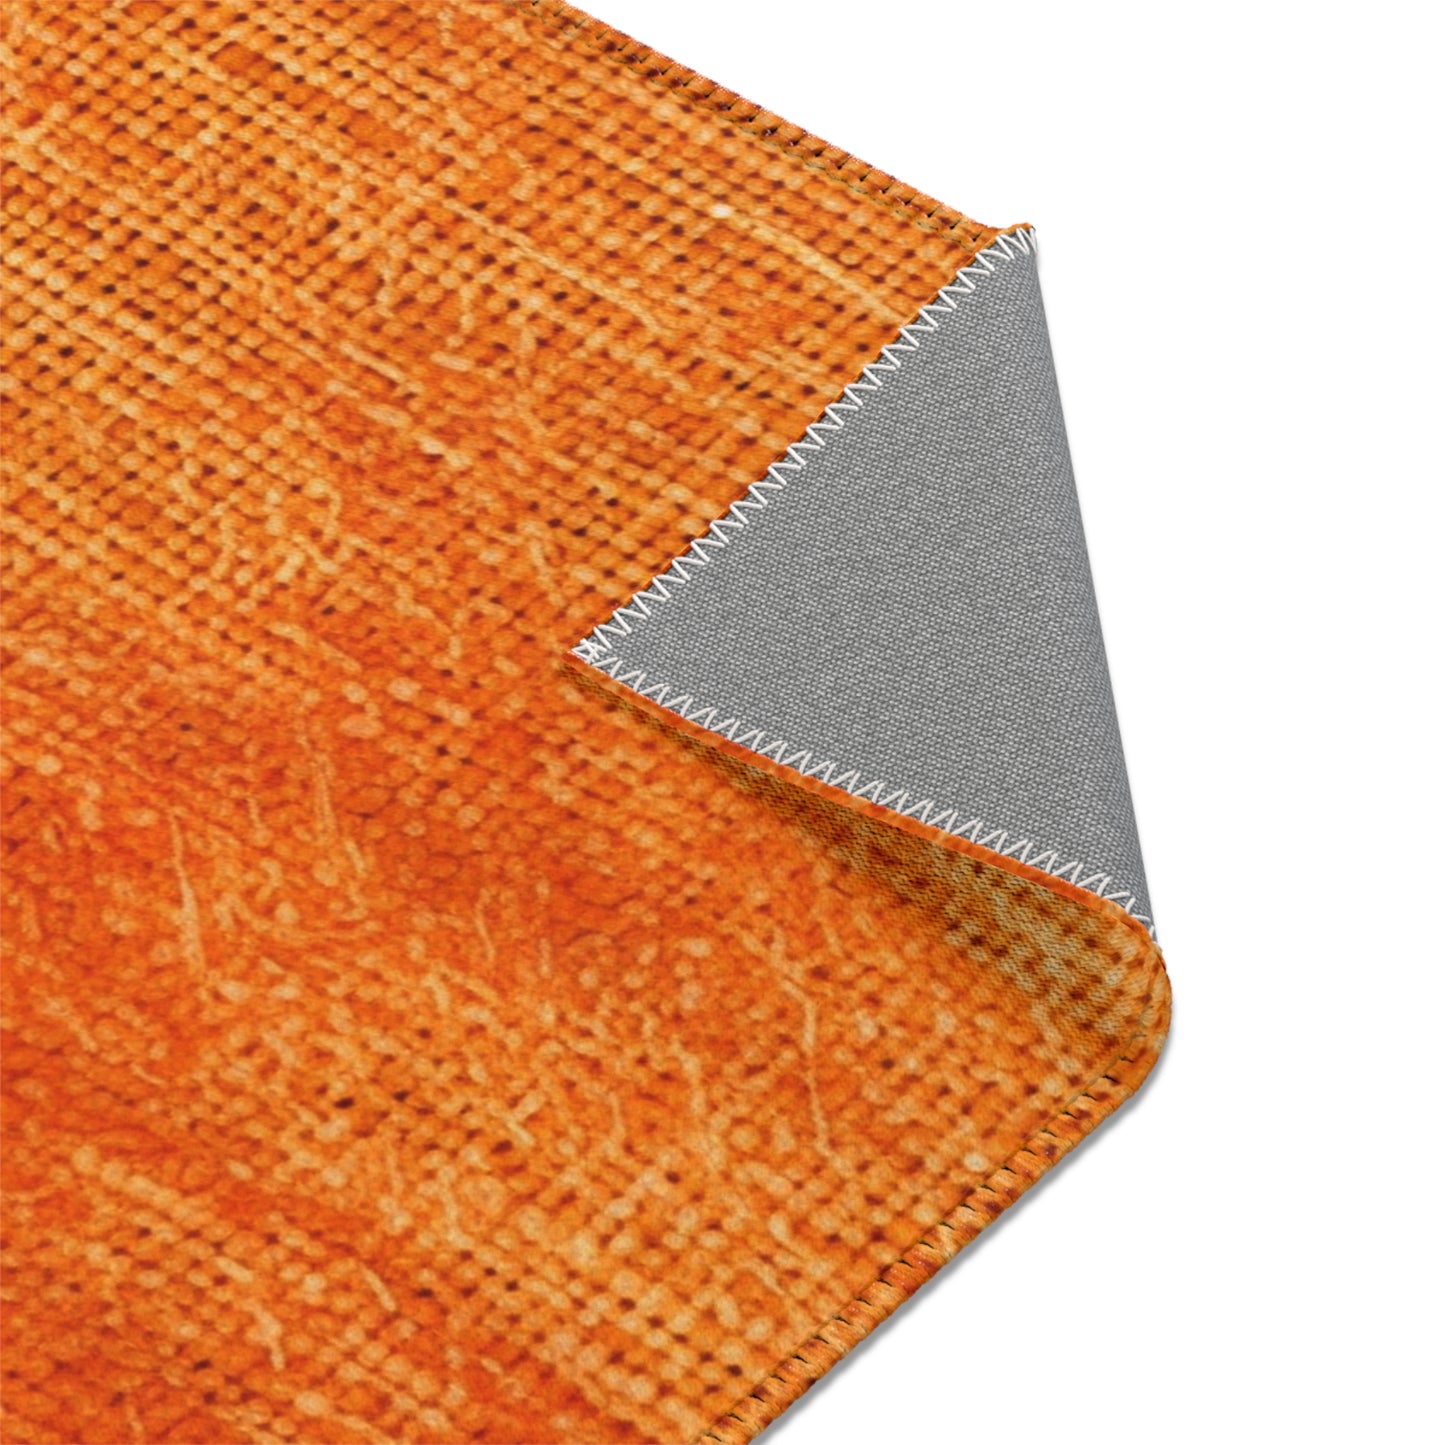 Burnt Orange/Rust: Denim-Inspired Autumn Fall Color Fabric - Area Rugs